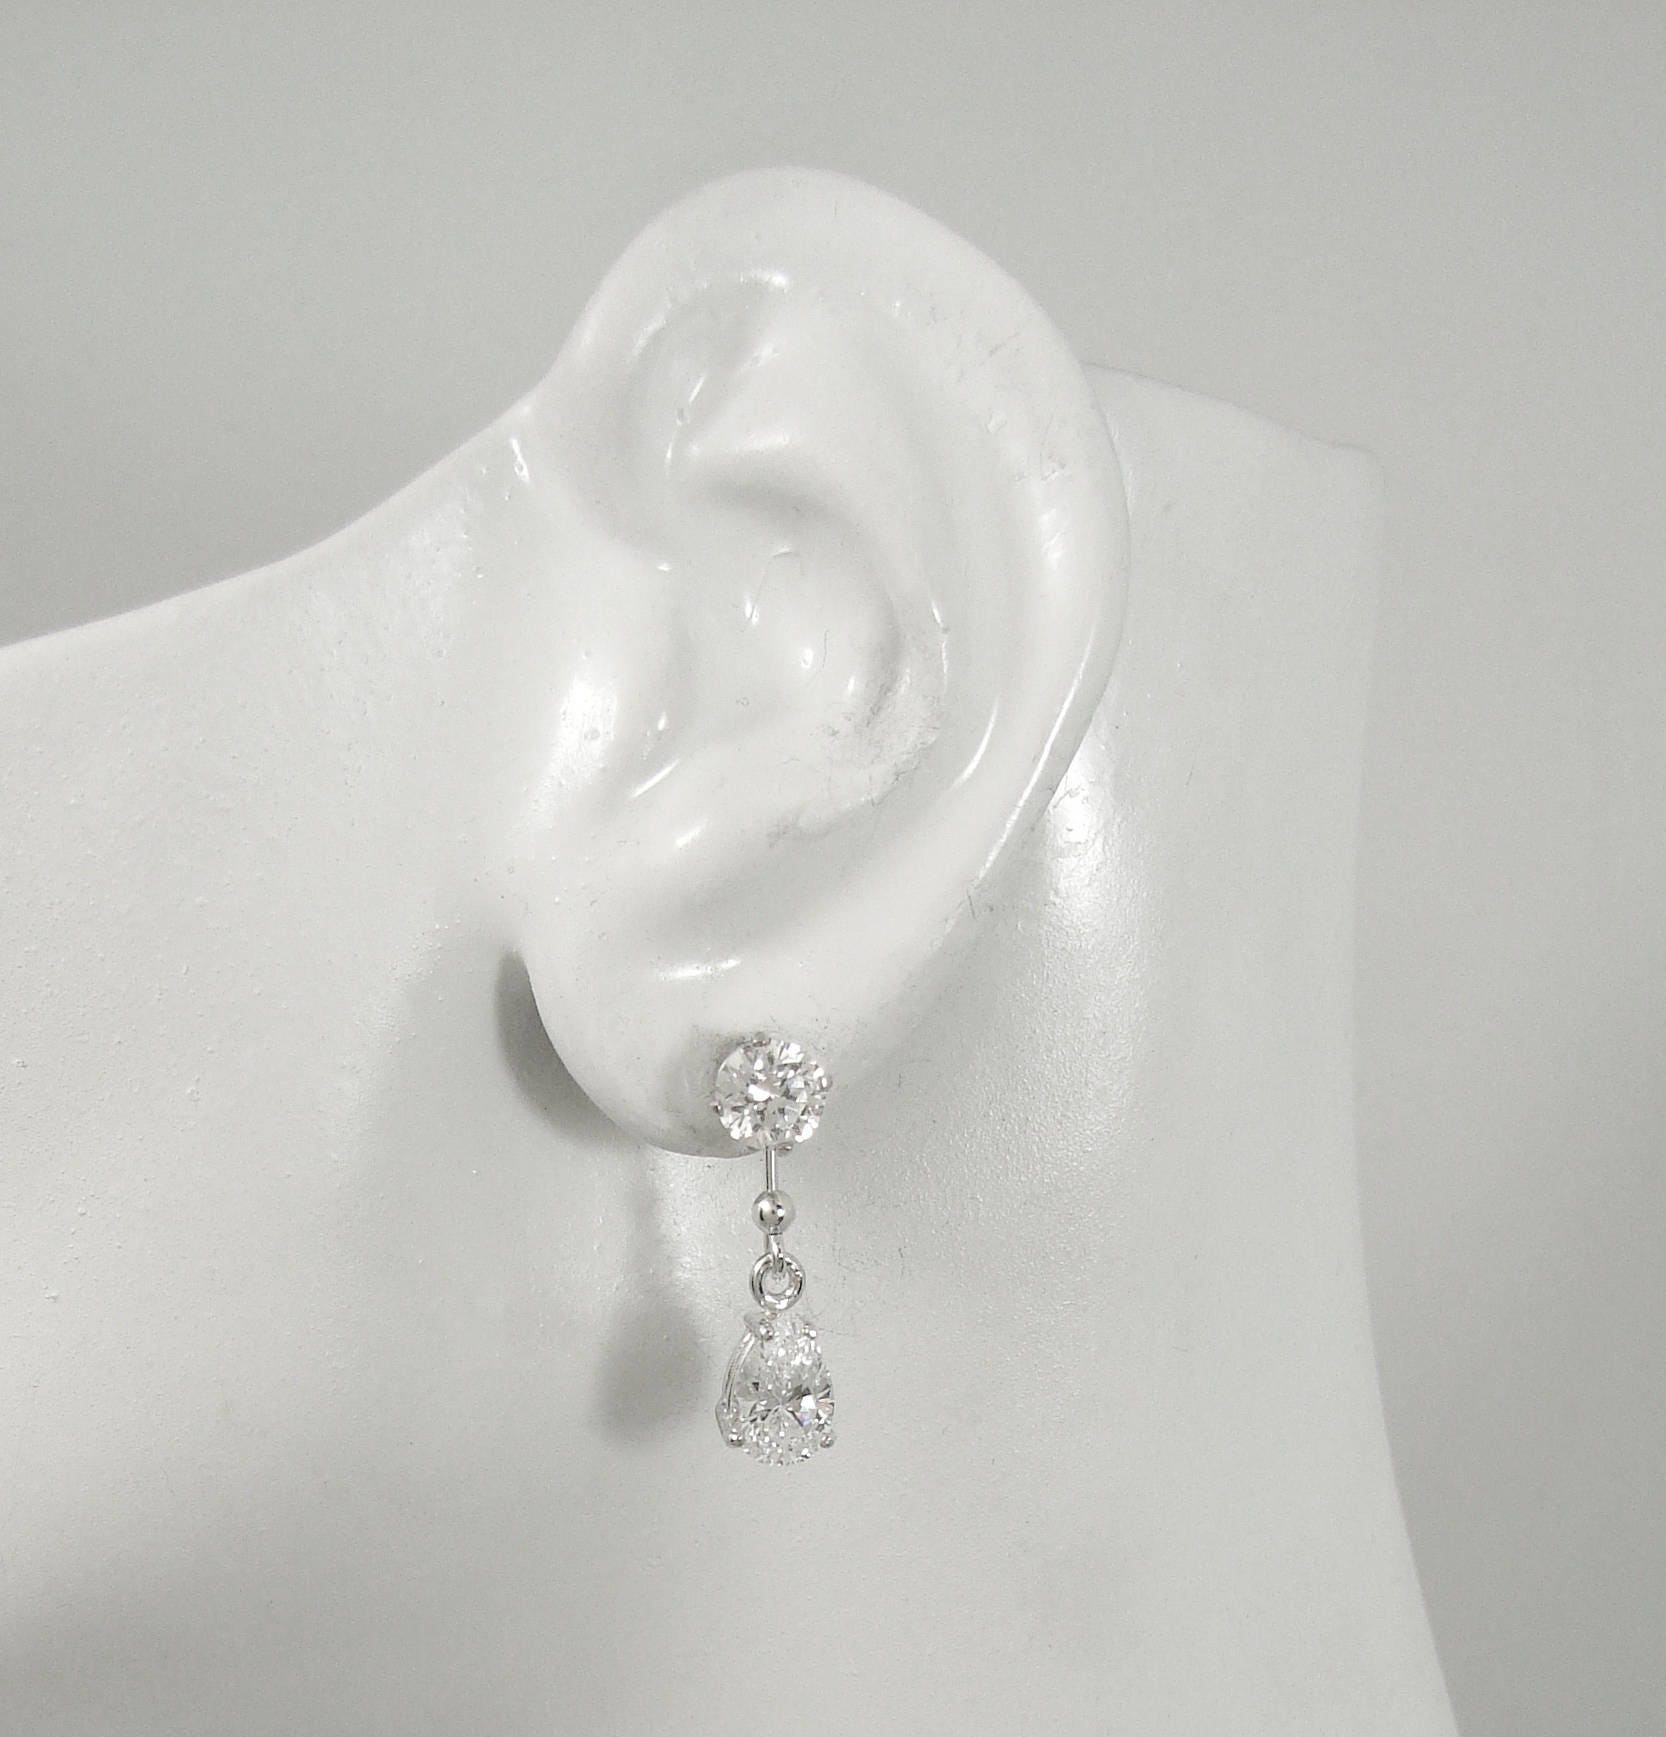 Earring JACKETS for Studs. Sterling SilverTeardrop Dangle | Etsy